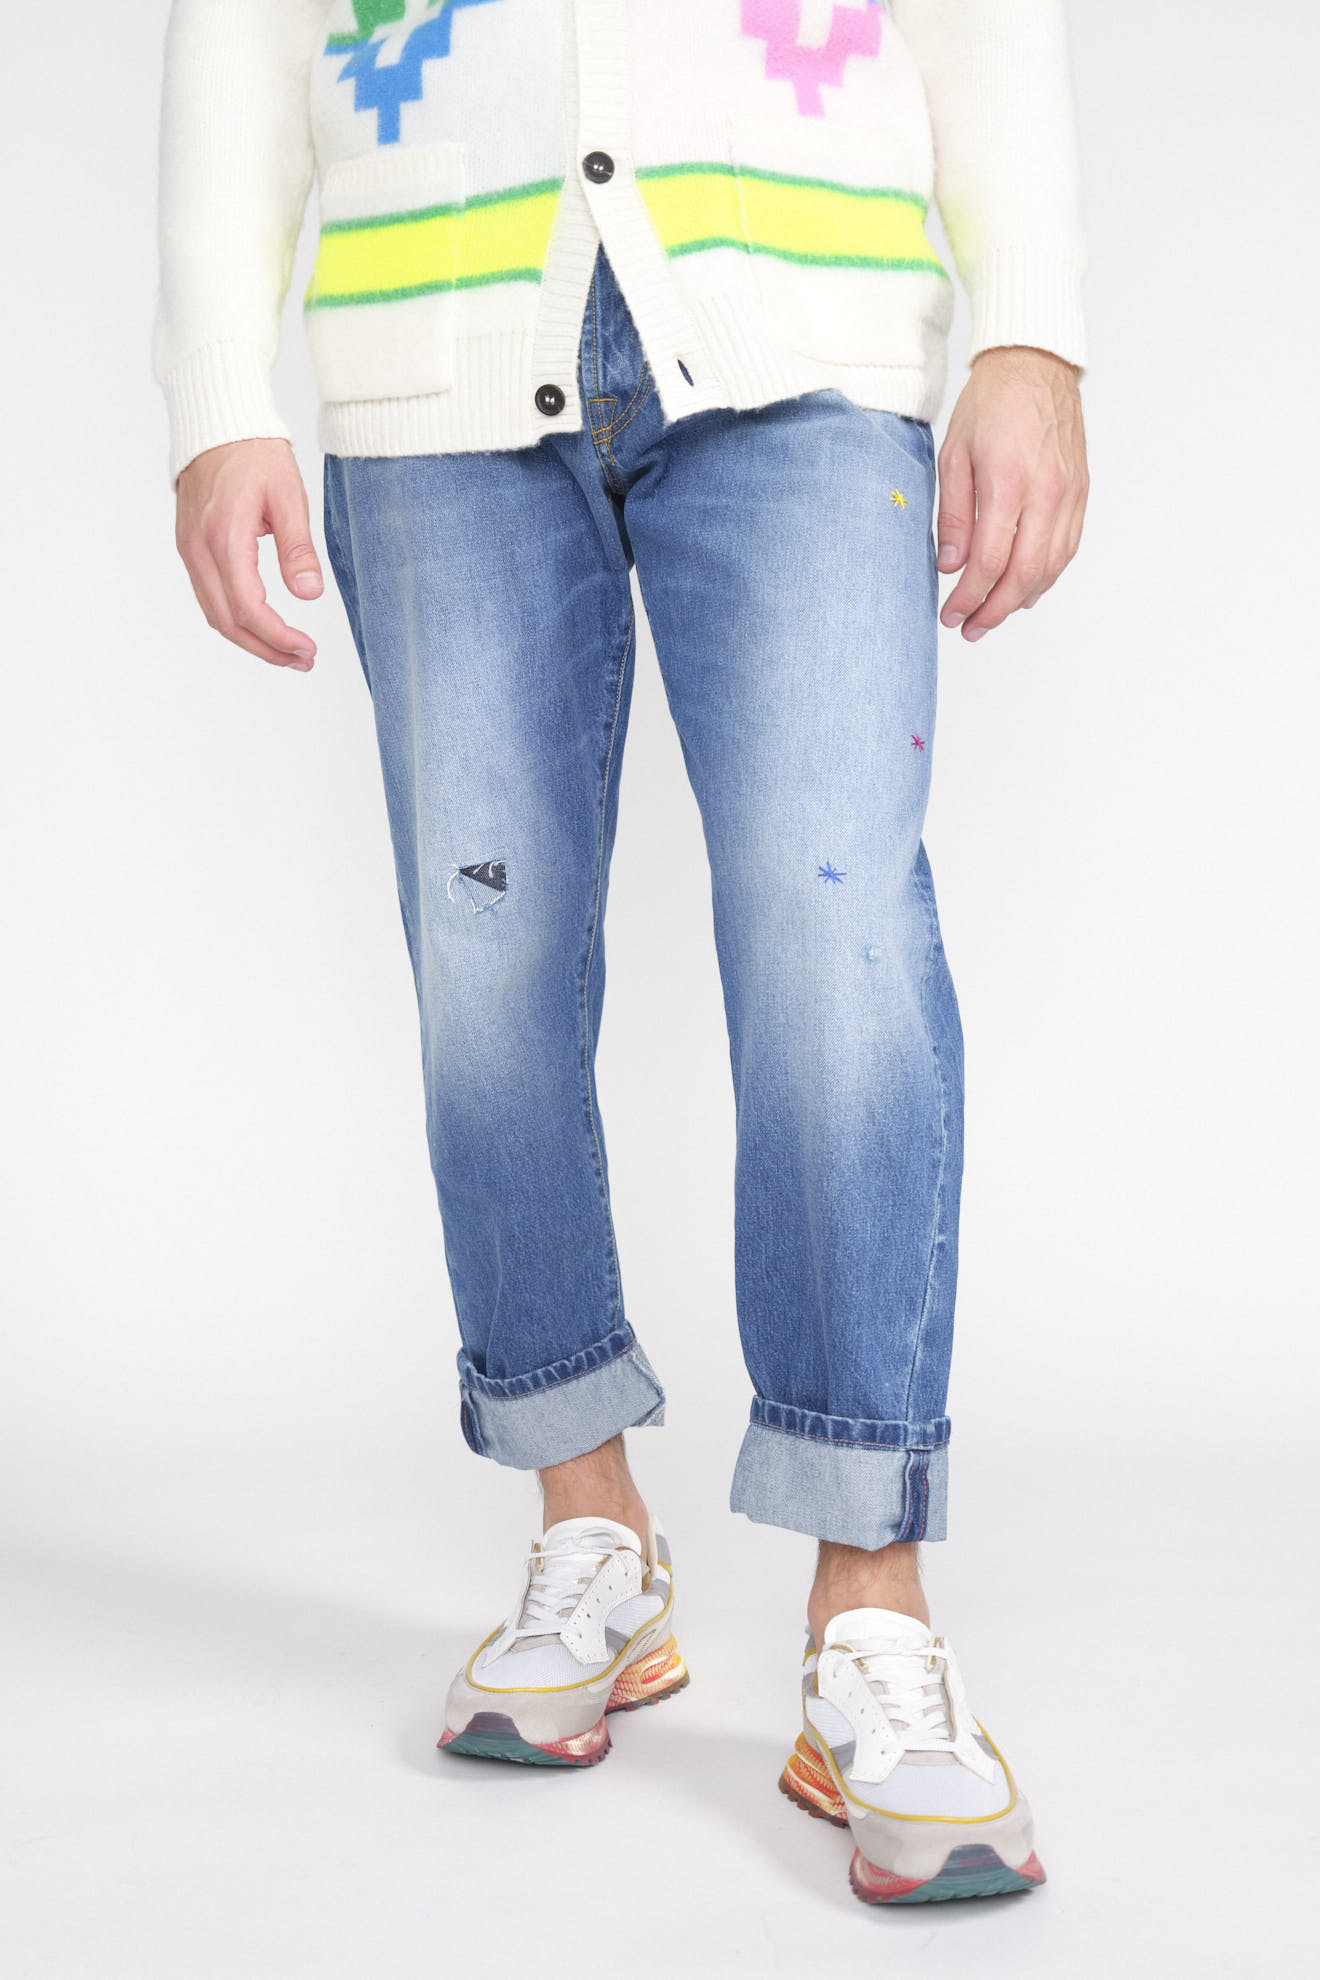 maurizio massimino Jose - Pantalon en jean avec patchs en denim bleu 48